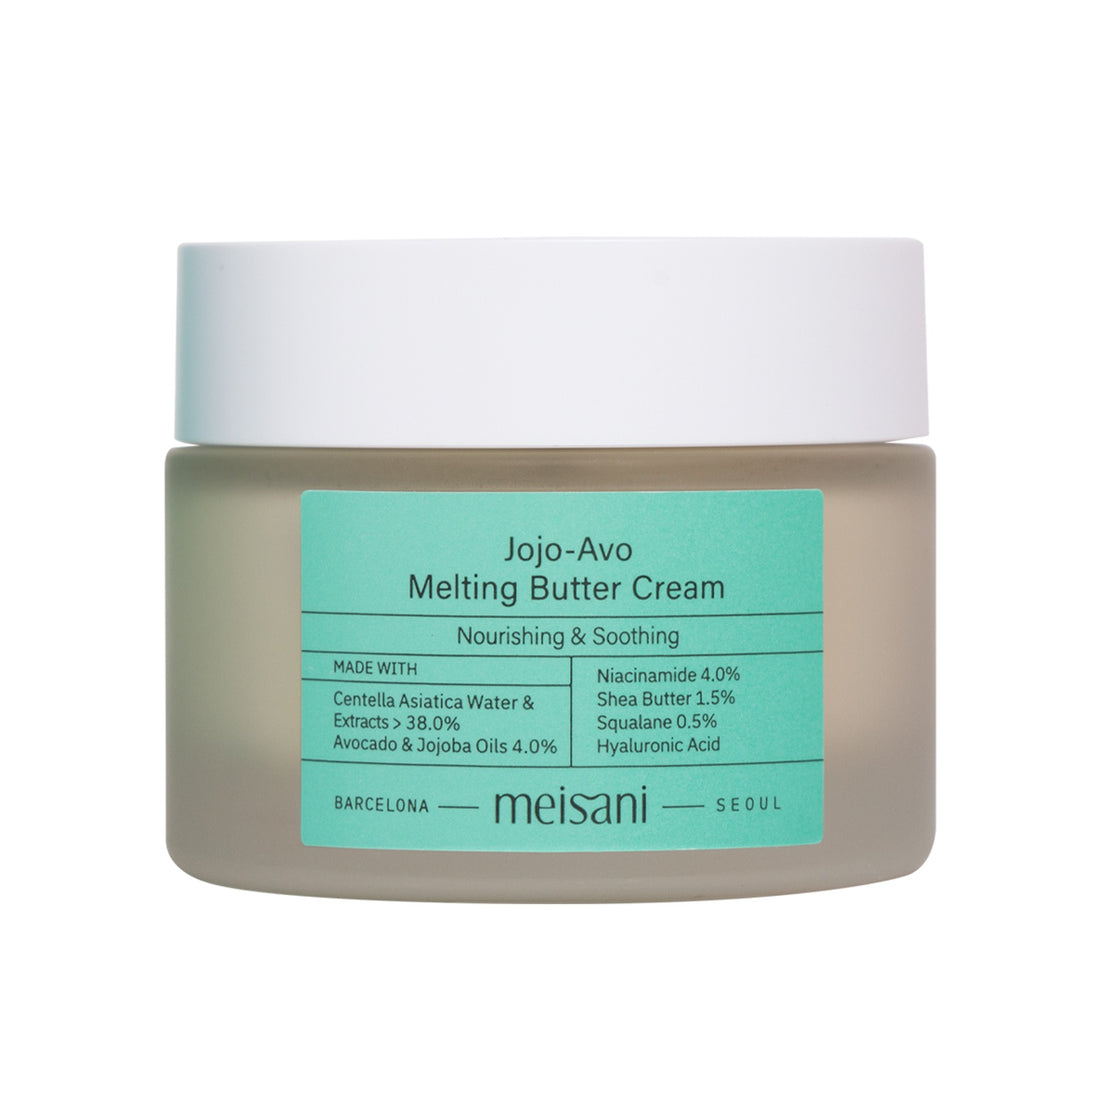 Meisani Jojo-Avo Melting Butter Cream